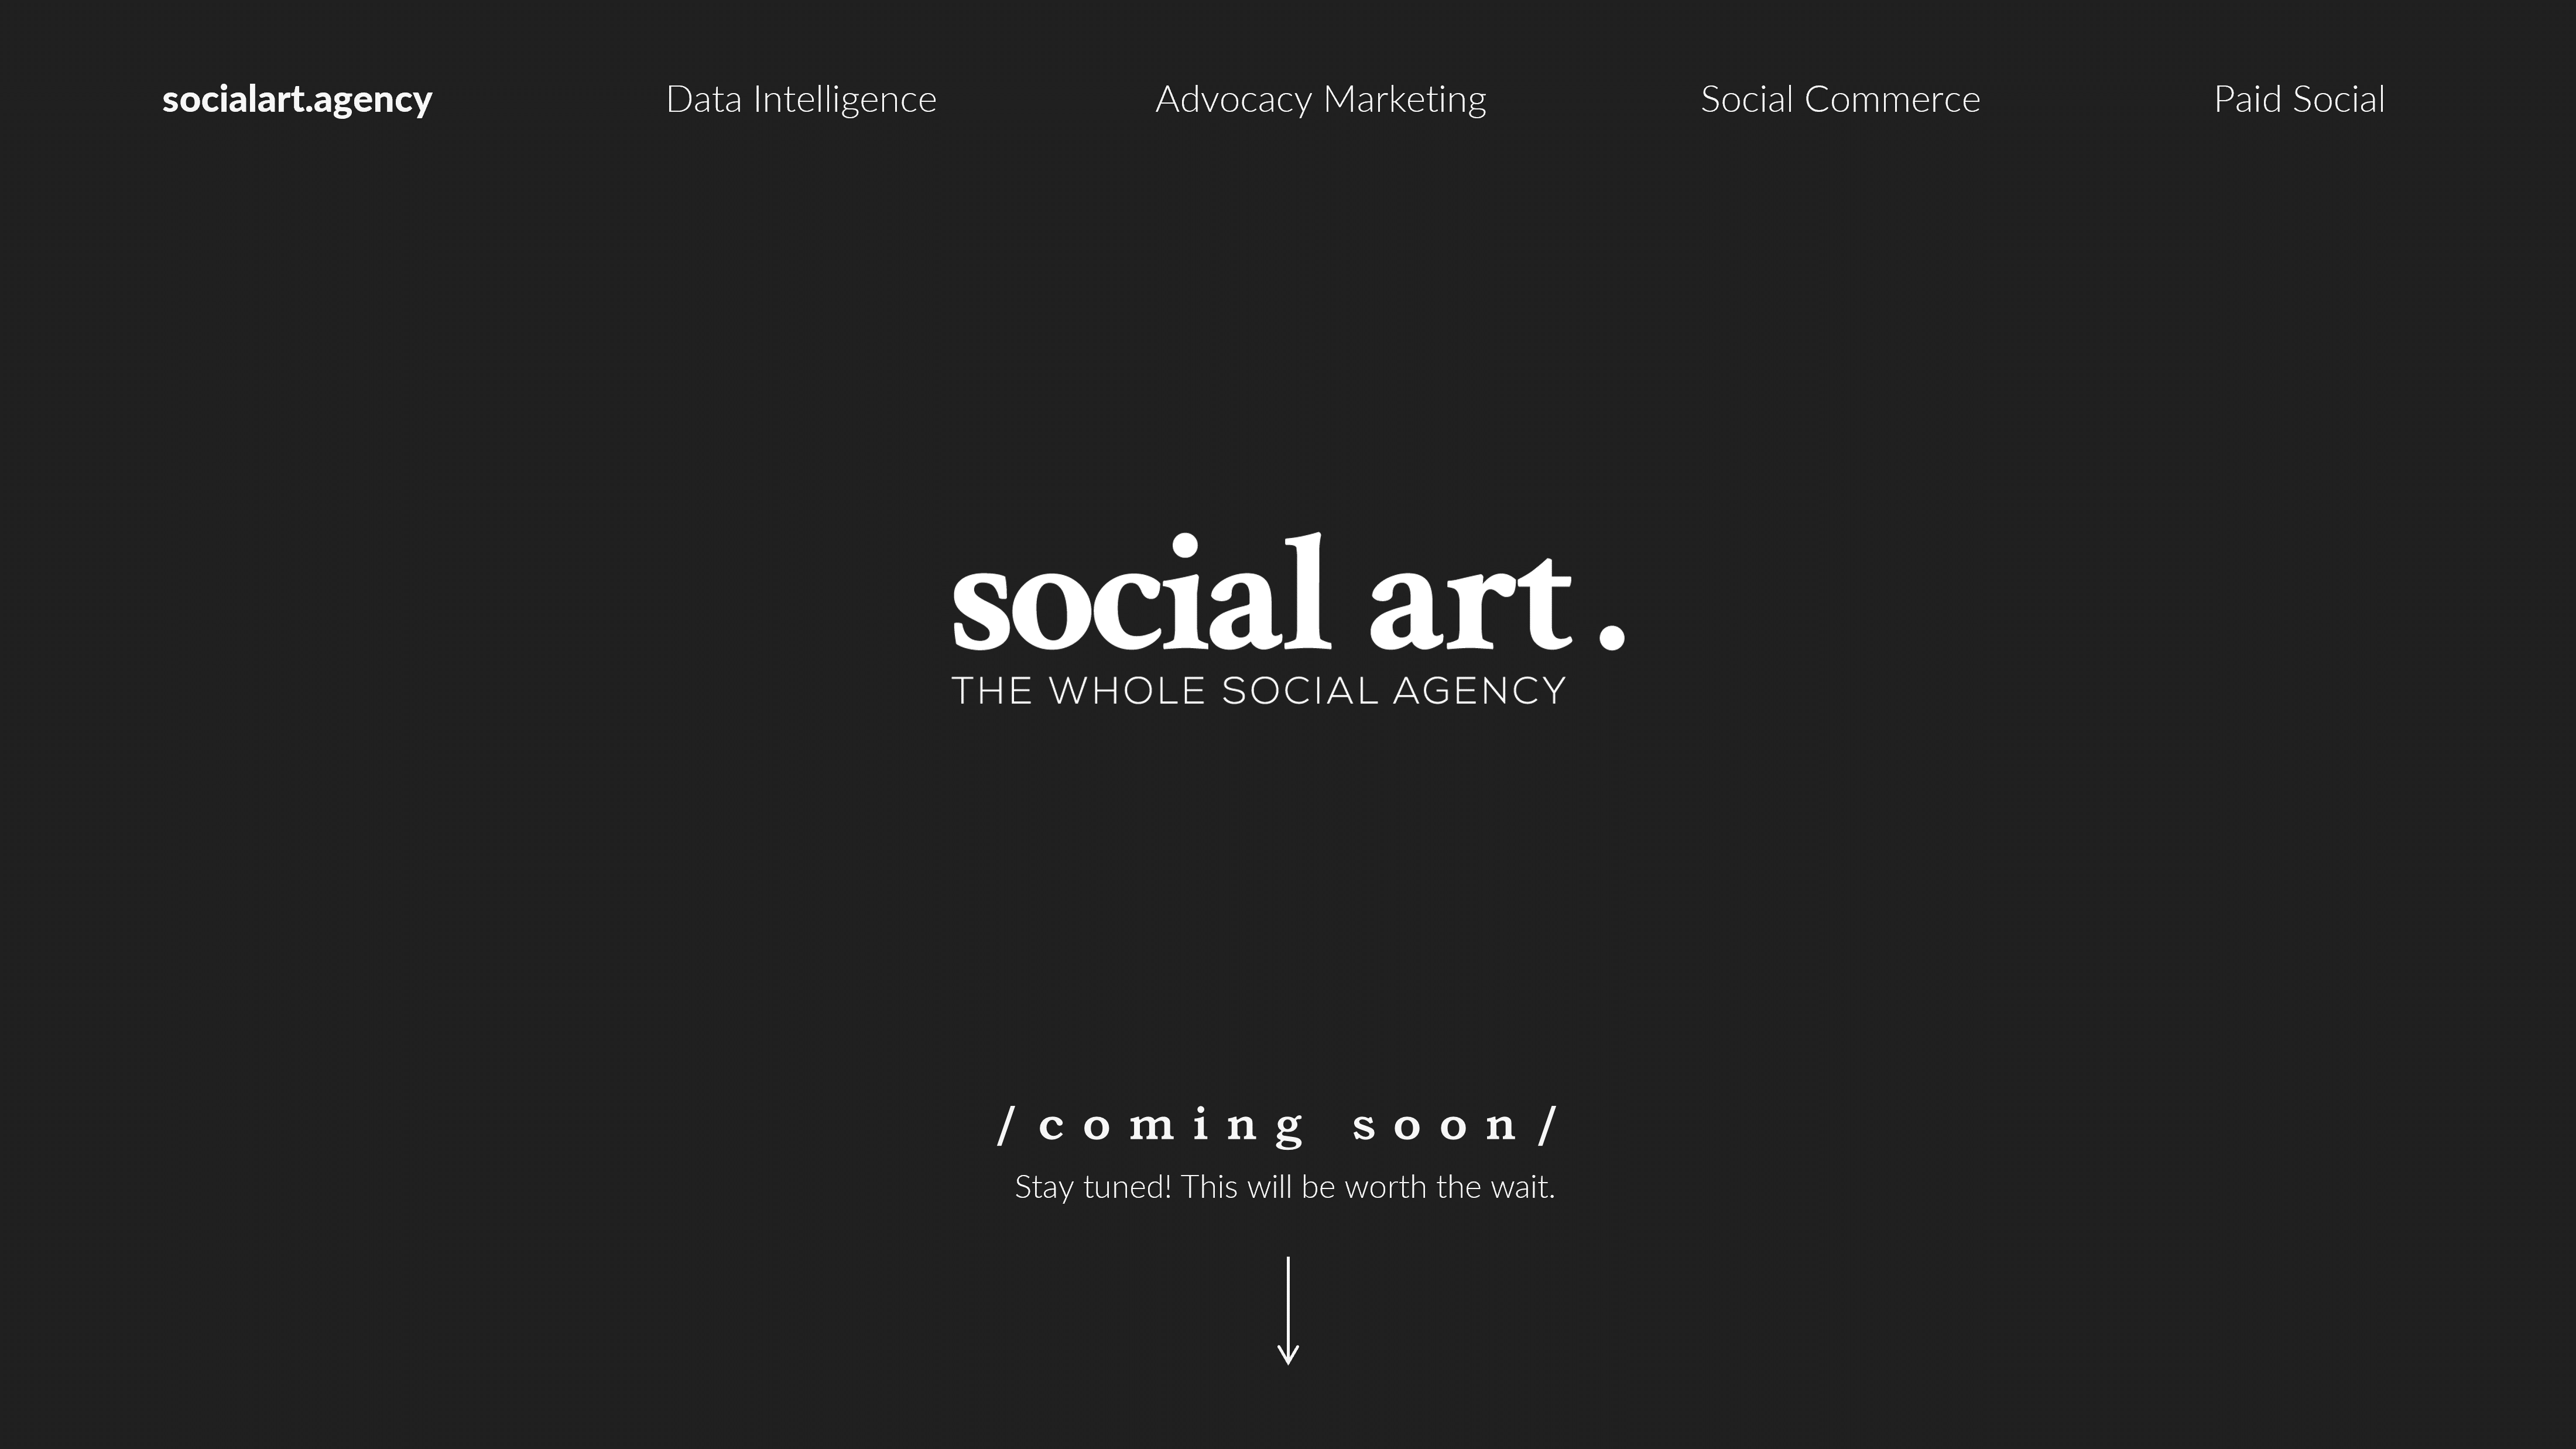 The Social Art